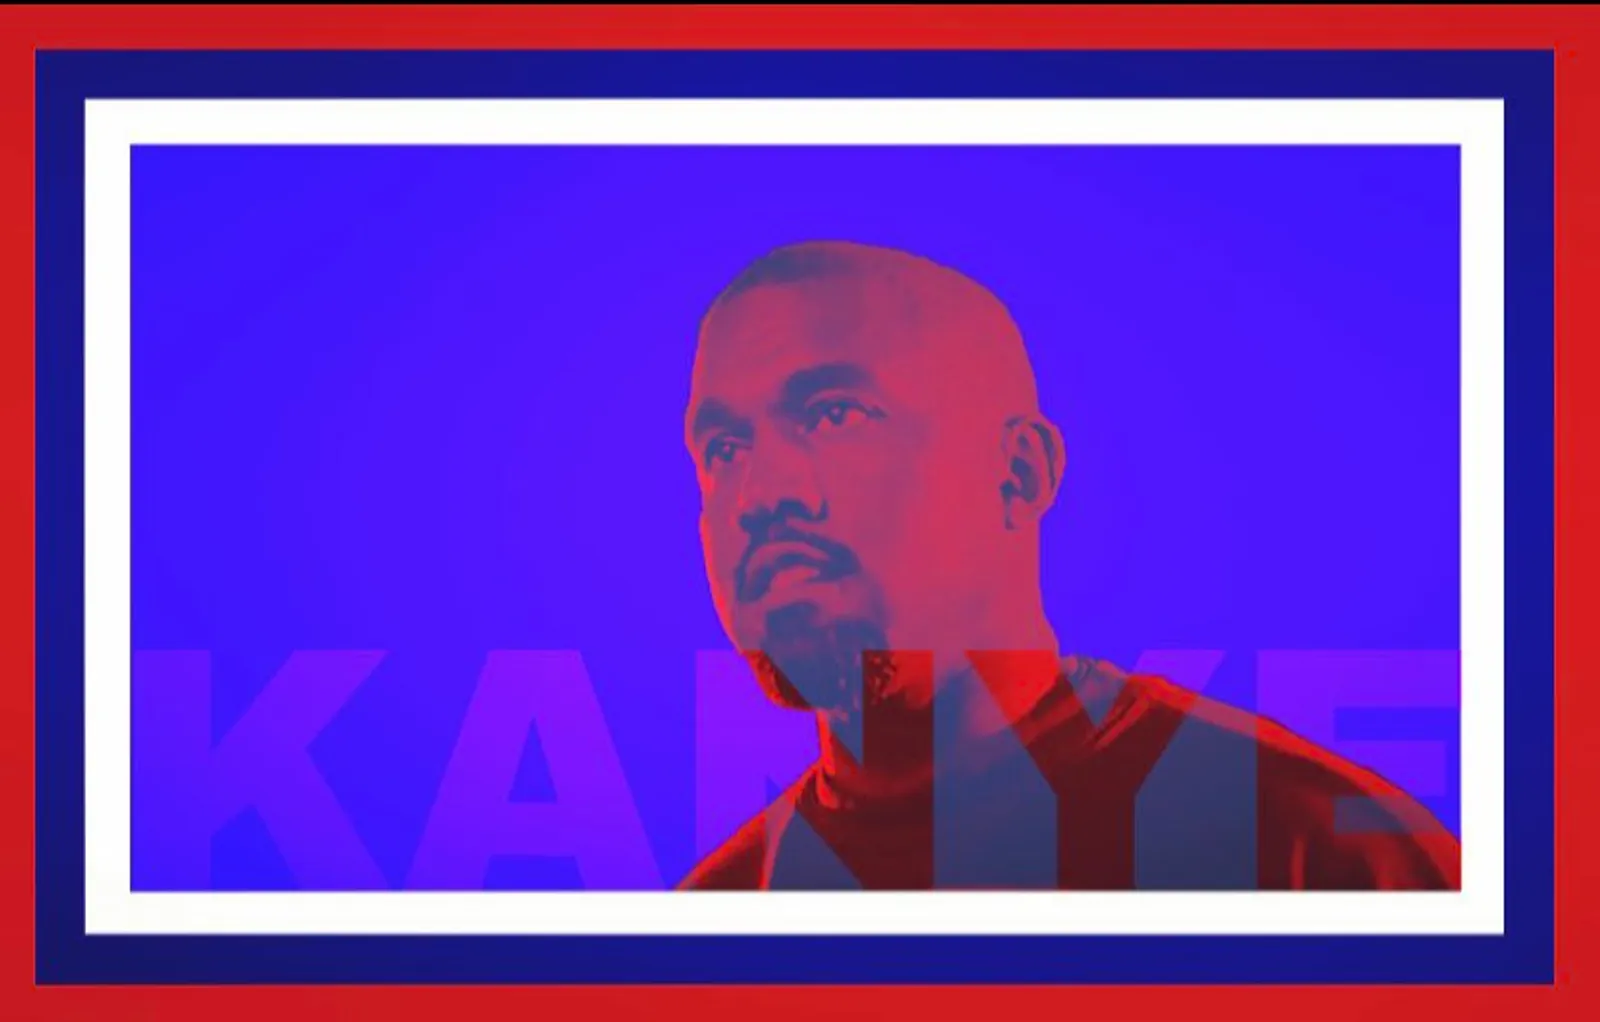 Berbuntut Panjang, Kanye West Ditolak Masuk Kantor Skechers